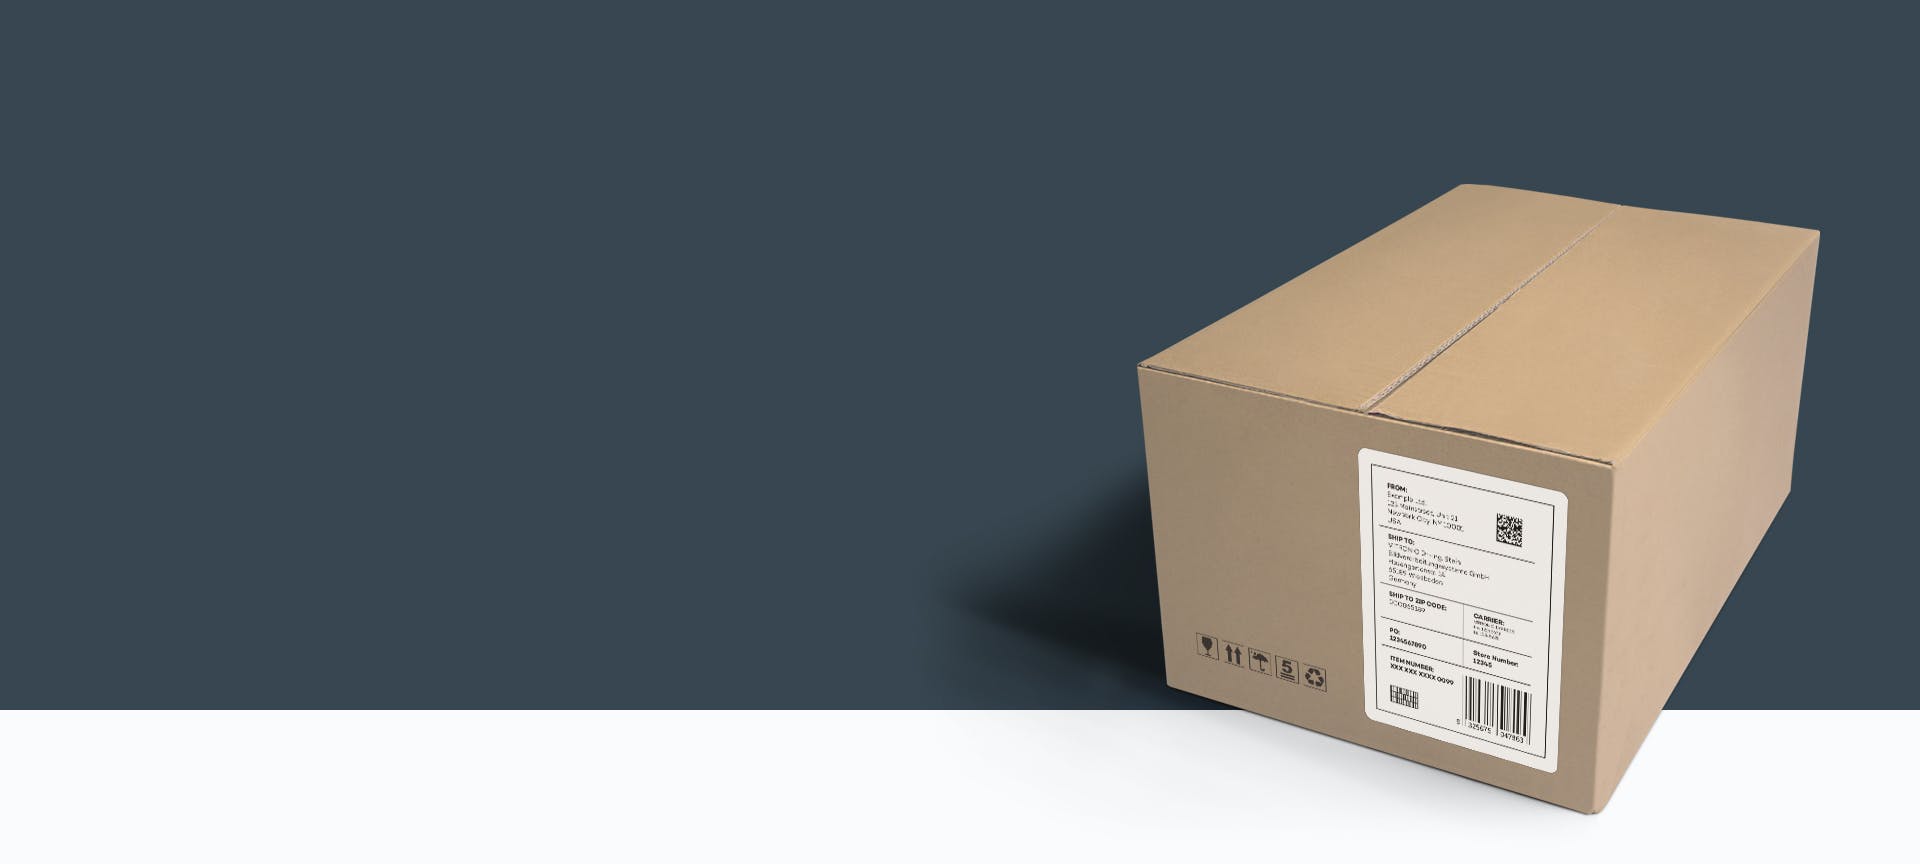 包裹和货物:VITRONIC系统的货物登记记录地址标签上的所有数据.